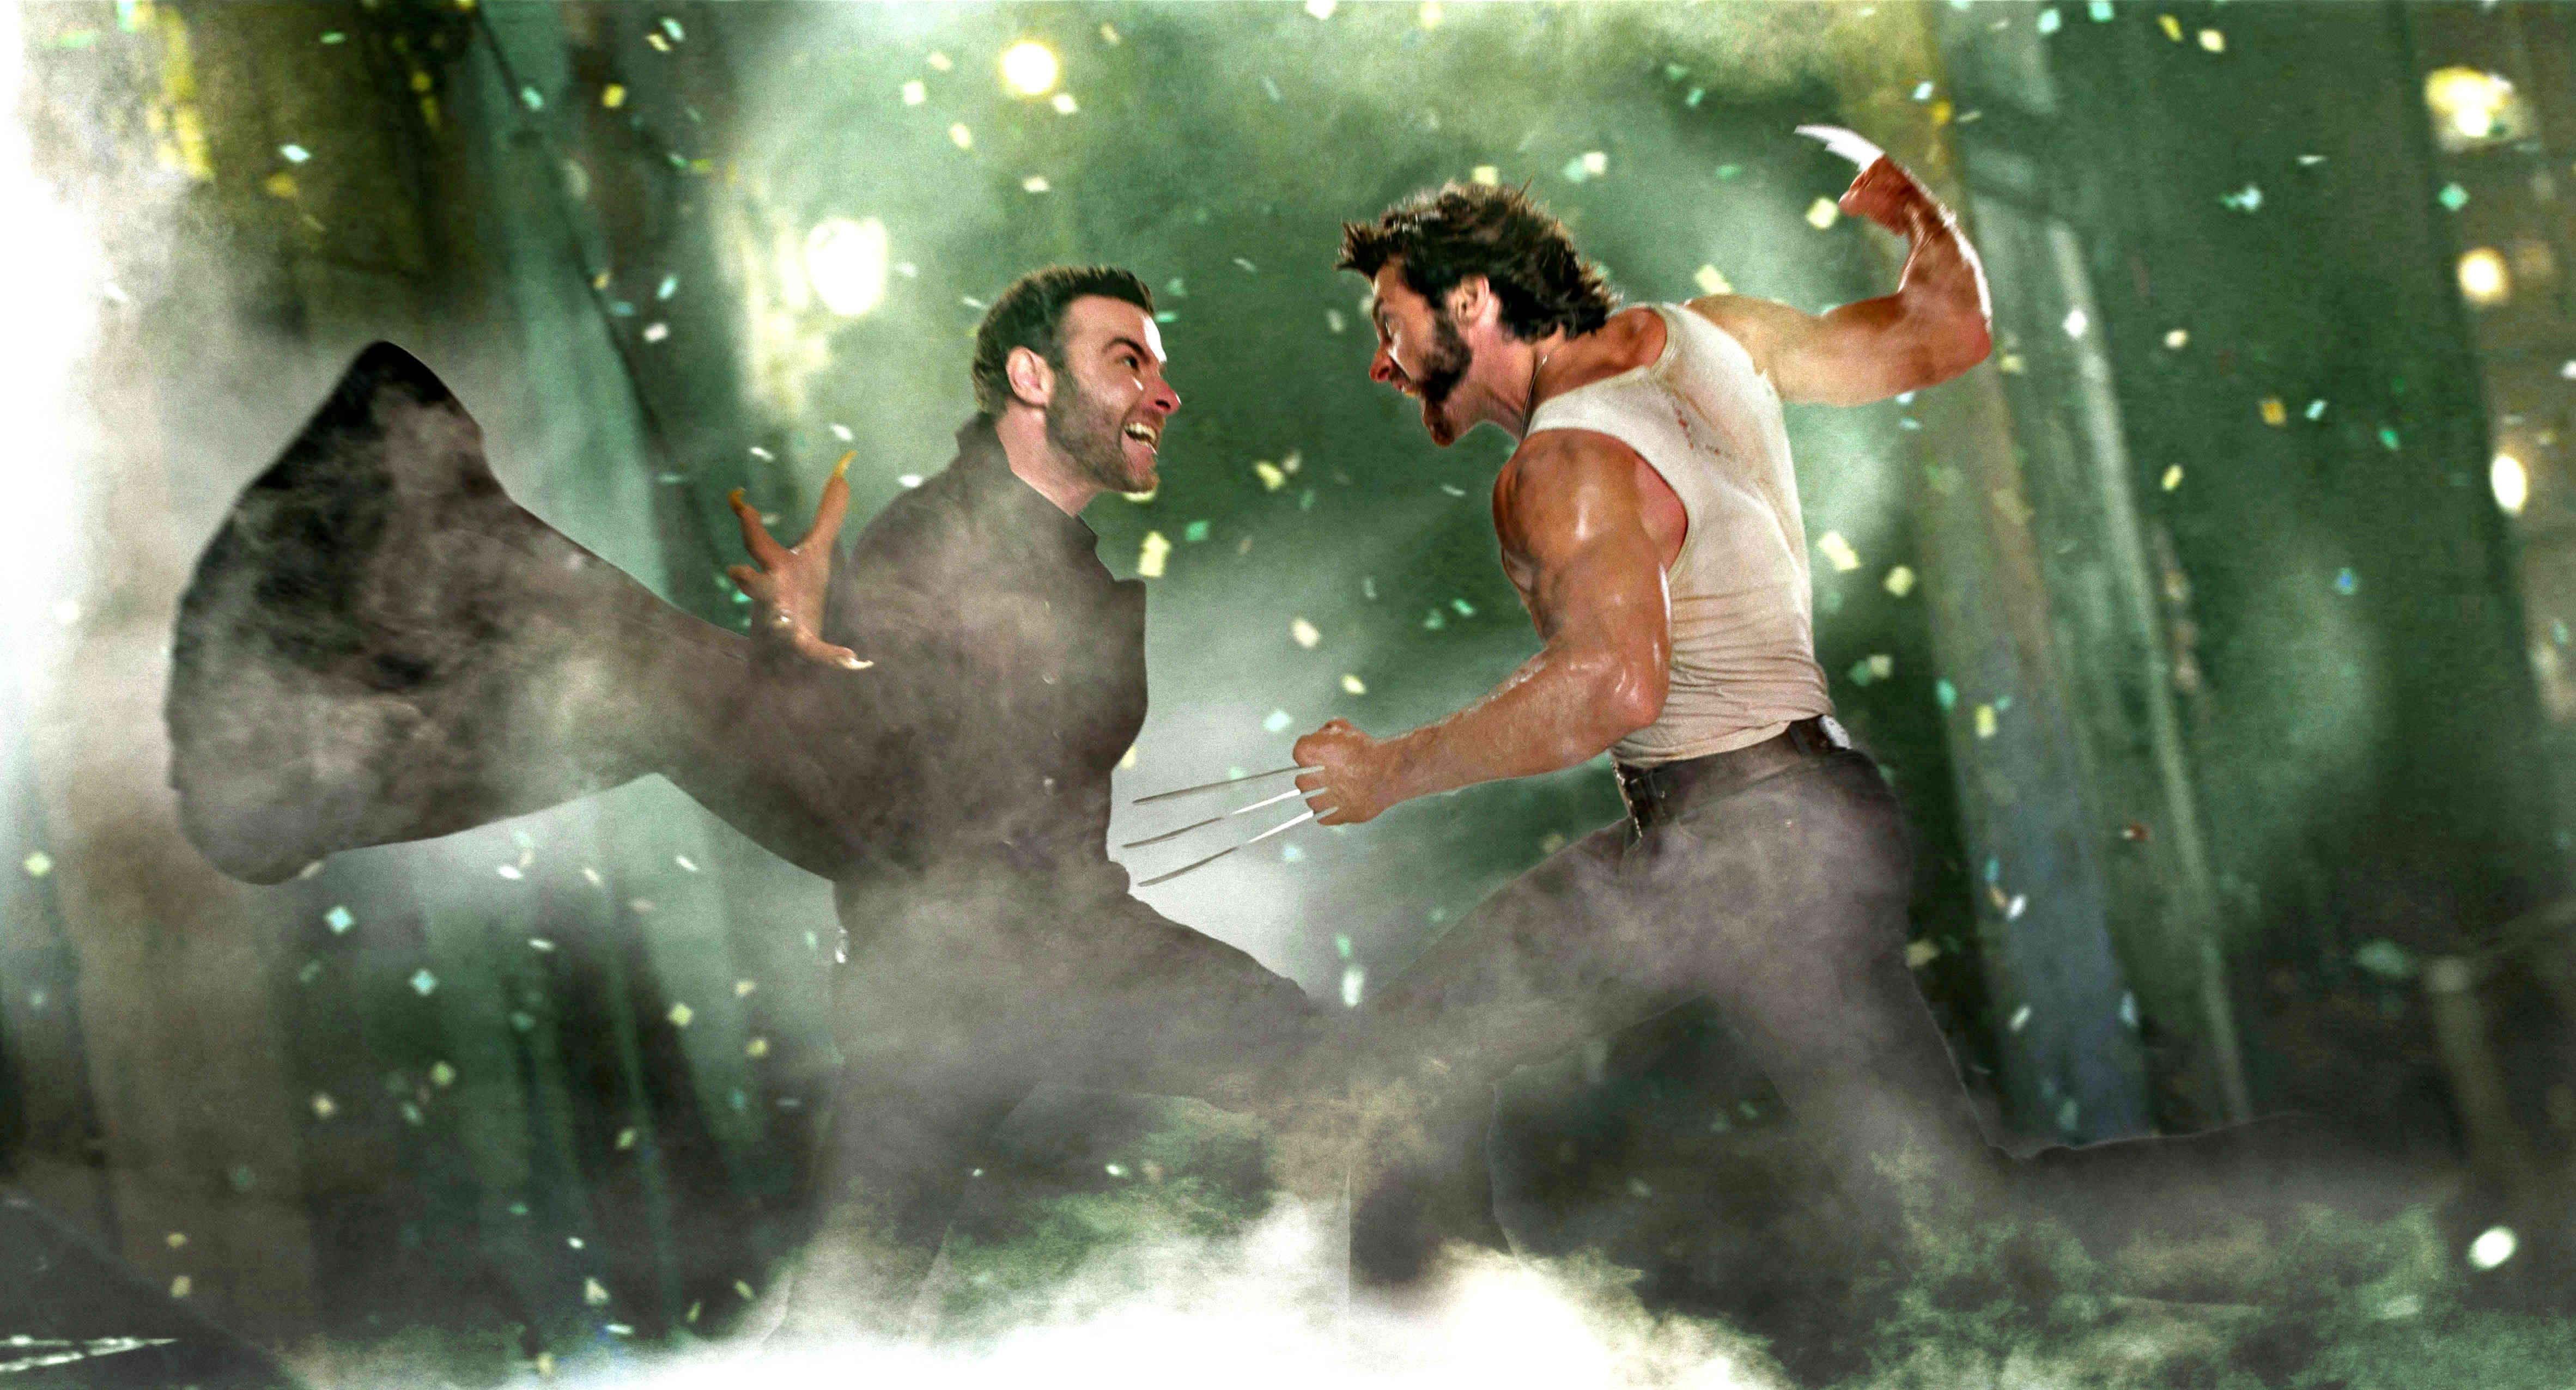 X Men Origins: Wolverine Picture 41. Wolverine Picture, Wolverine Man Movies